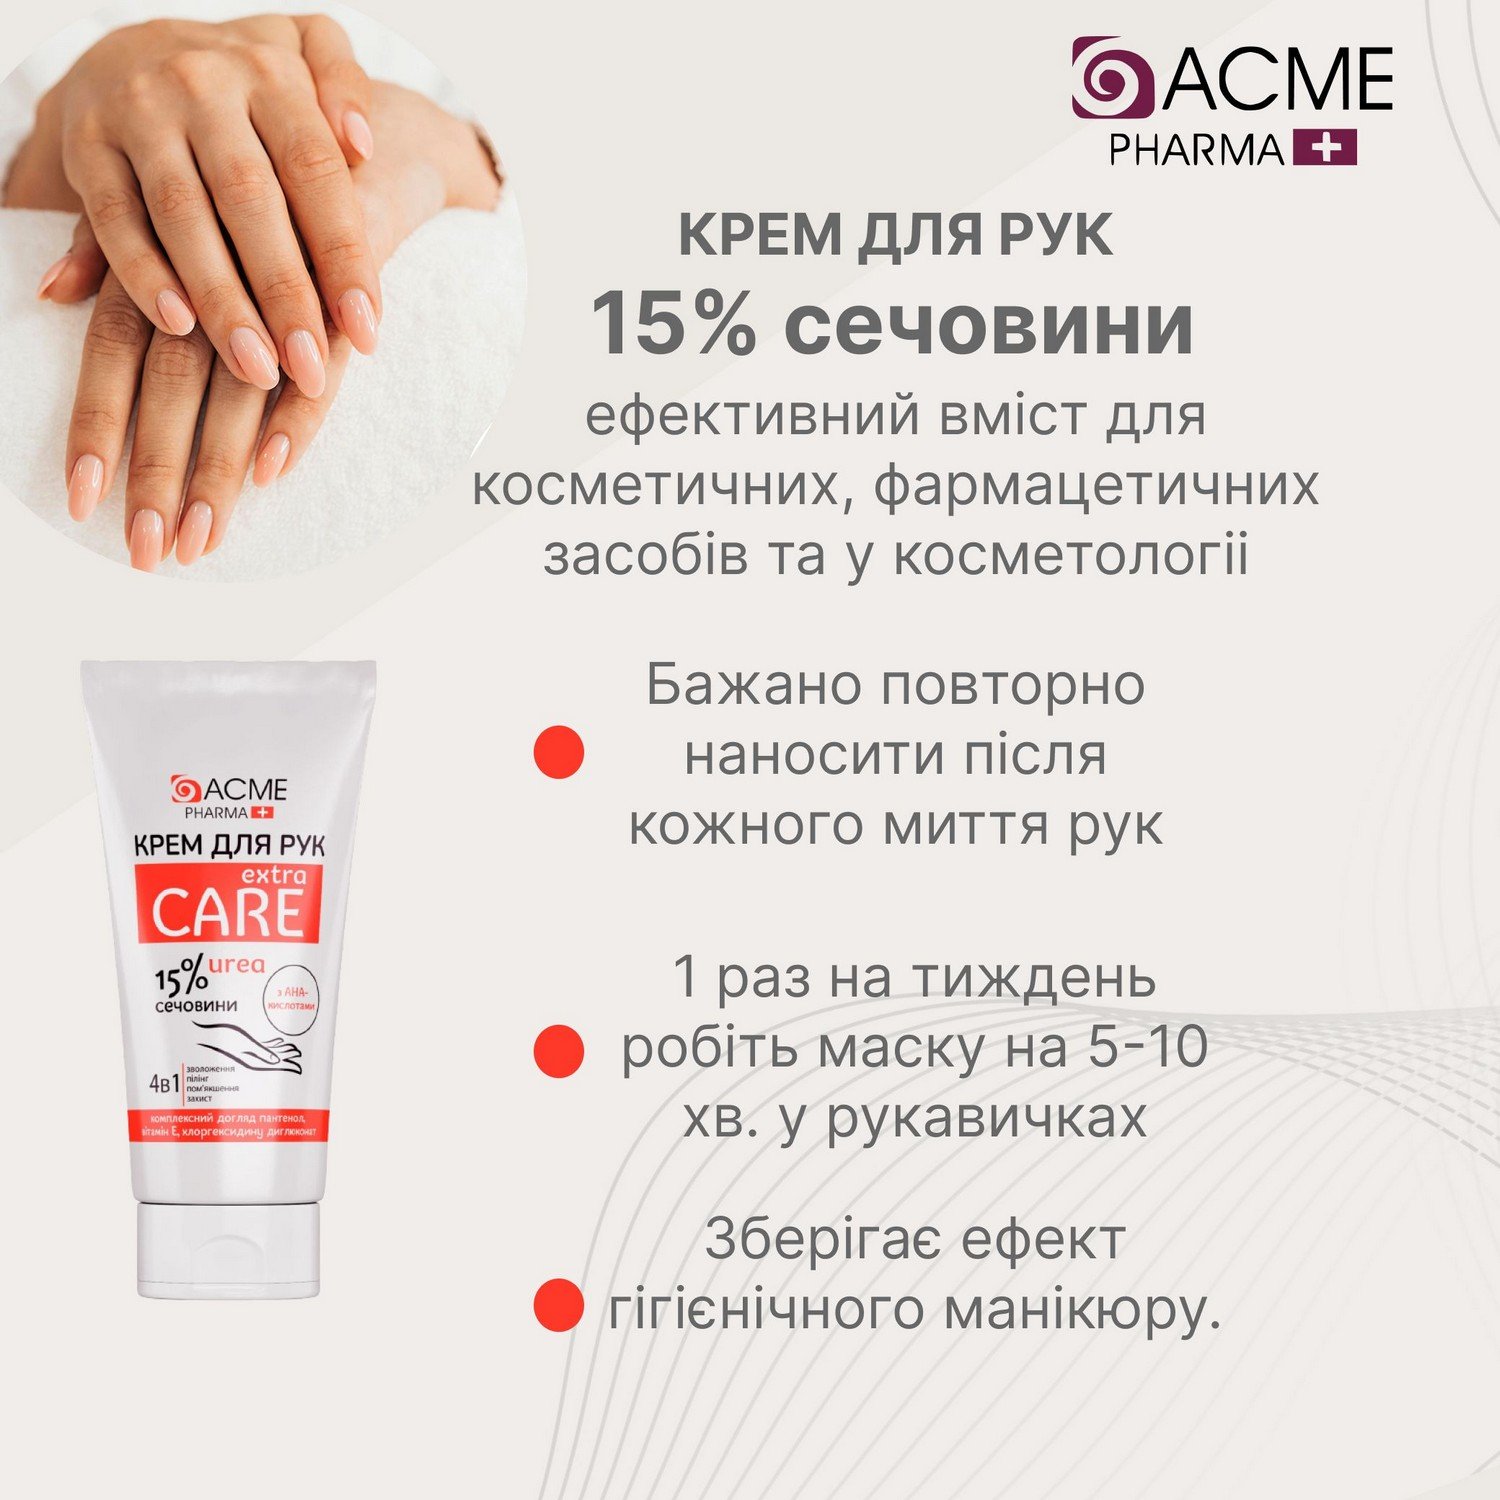 Крем для рук Acme Pharma Extra Care 4 в 1, із вмістом сечовини 15%, 90 мл - фото 3